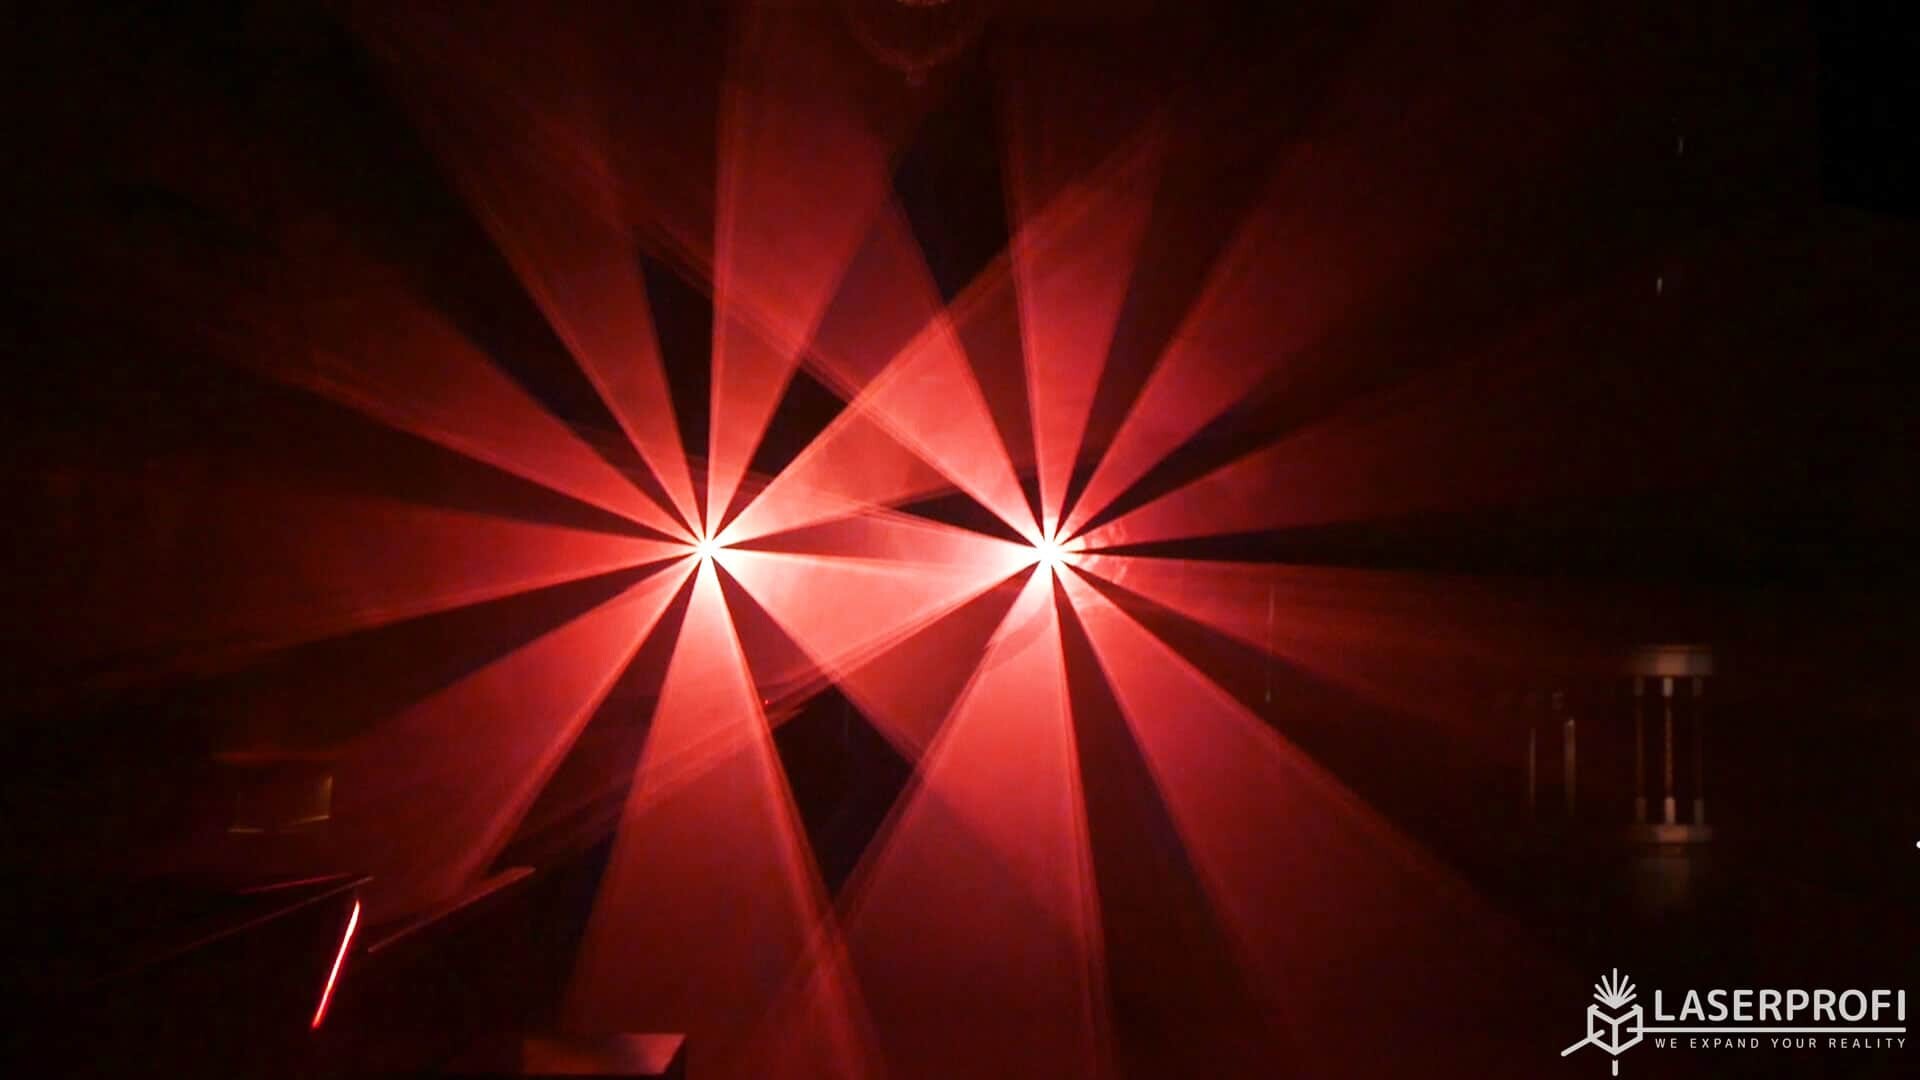 Przestrzenny pokaz laserowy w klubie dyskotekowym